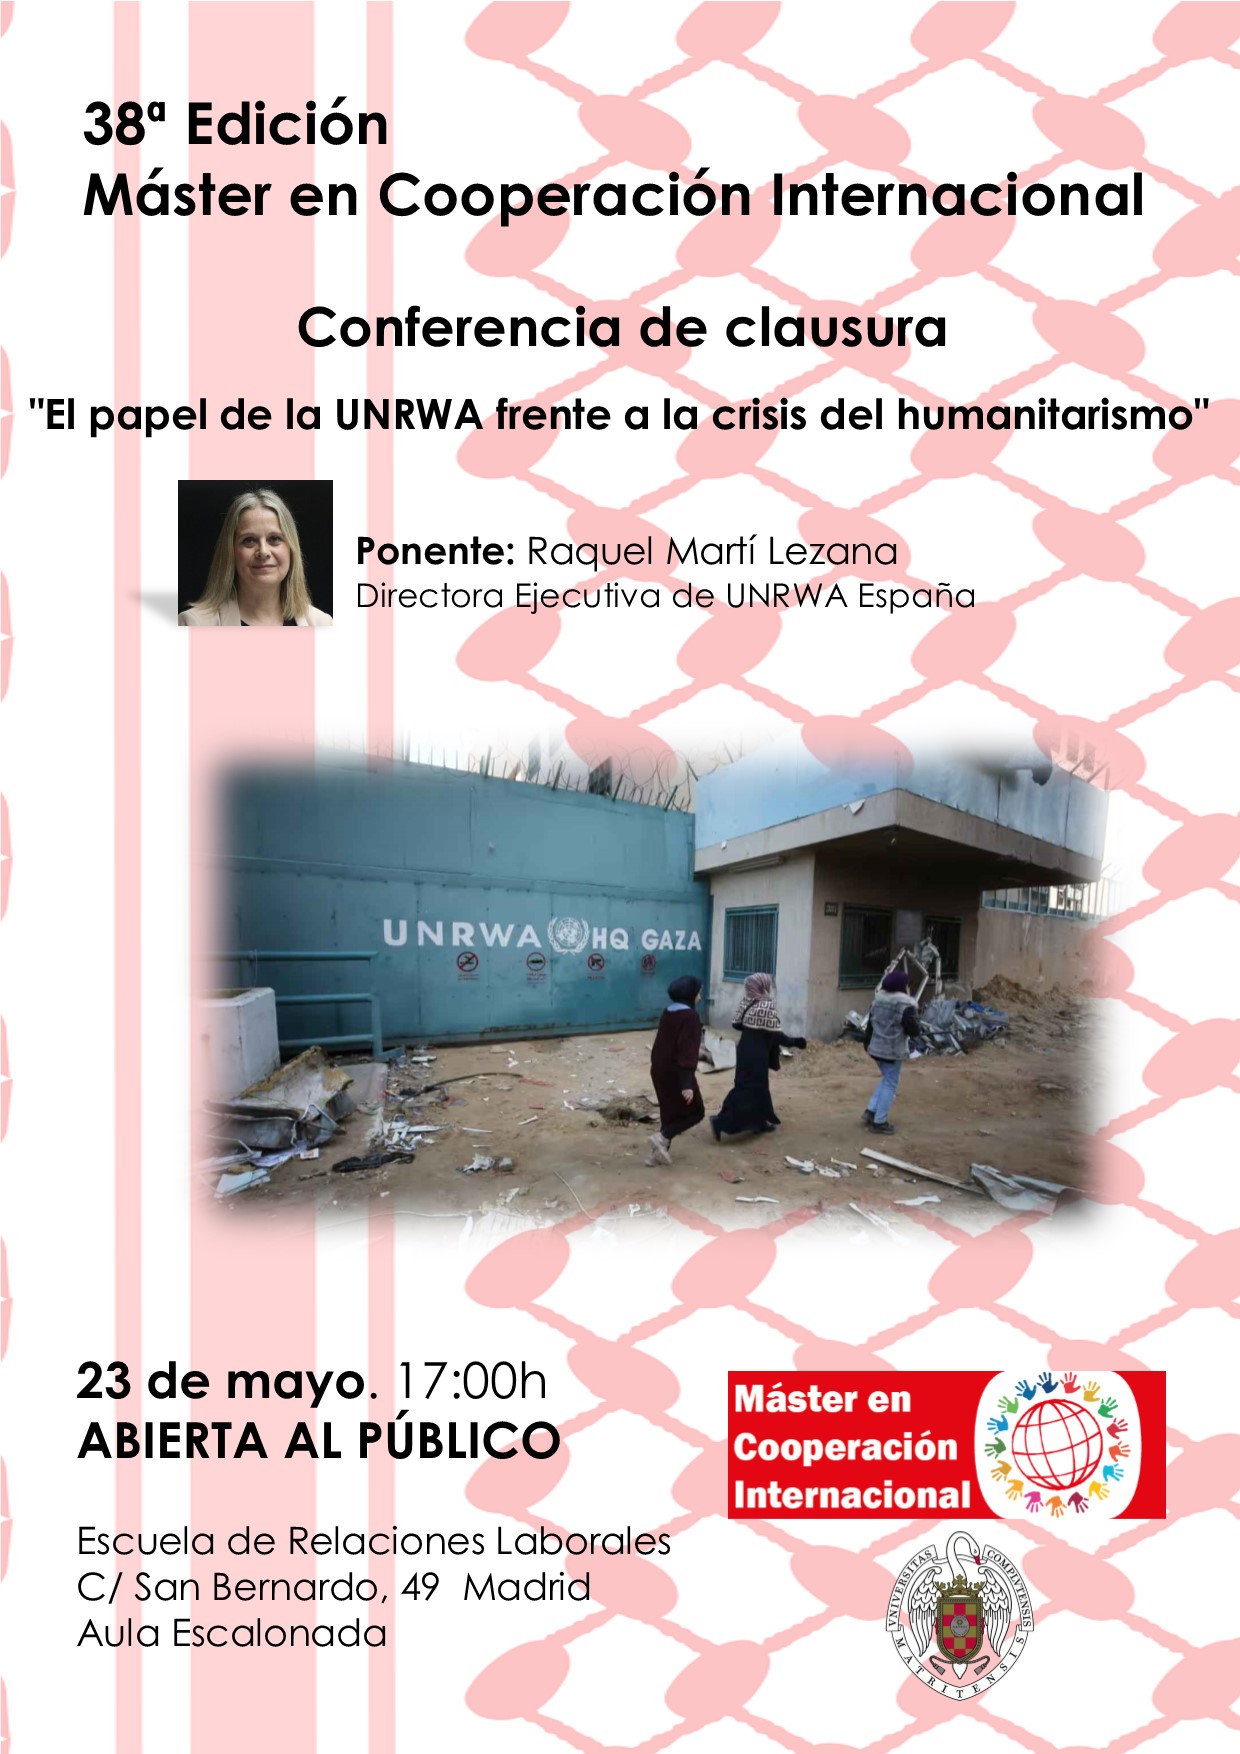 Conferencia de la clausura del Máster en Cooperación Internacional. "El papel de la UNRWA frente a la crisis del humanitarismo"